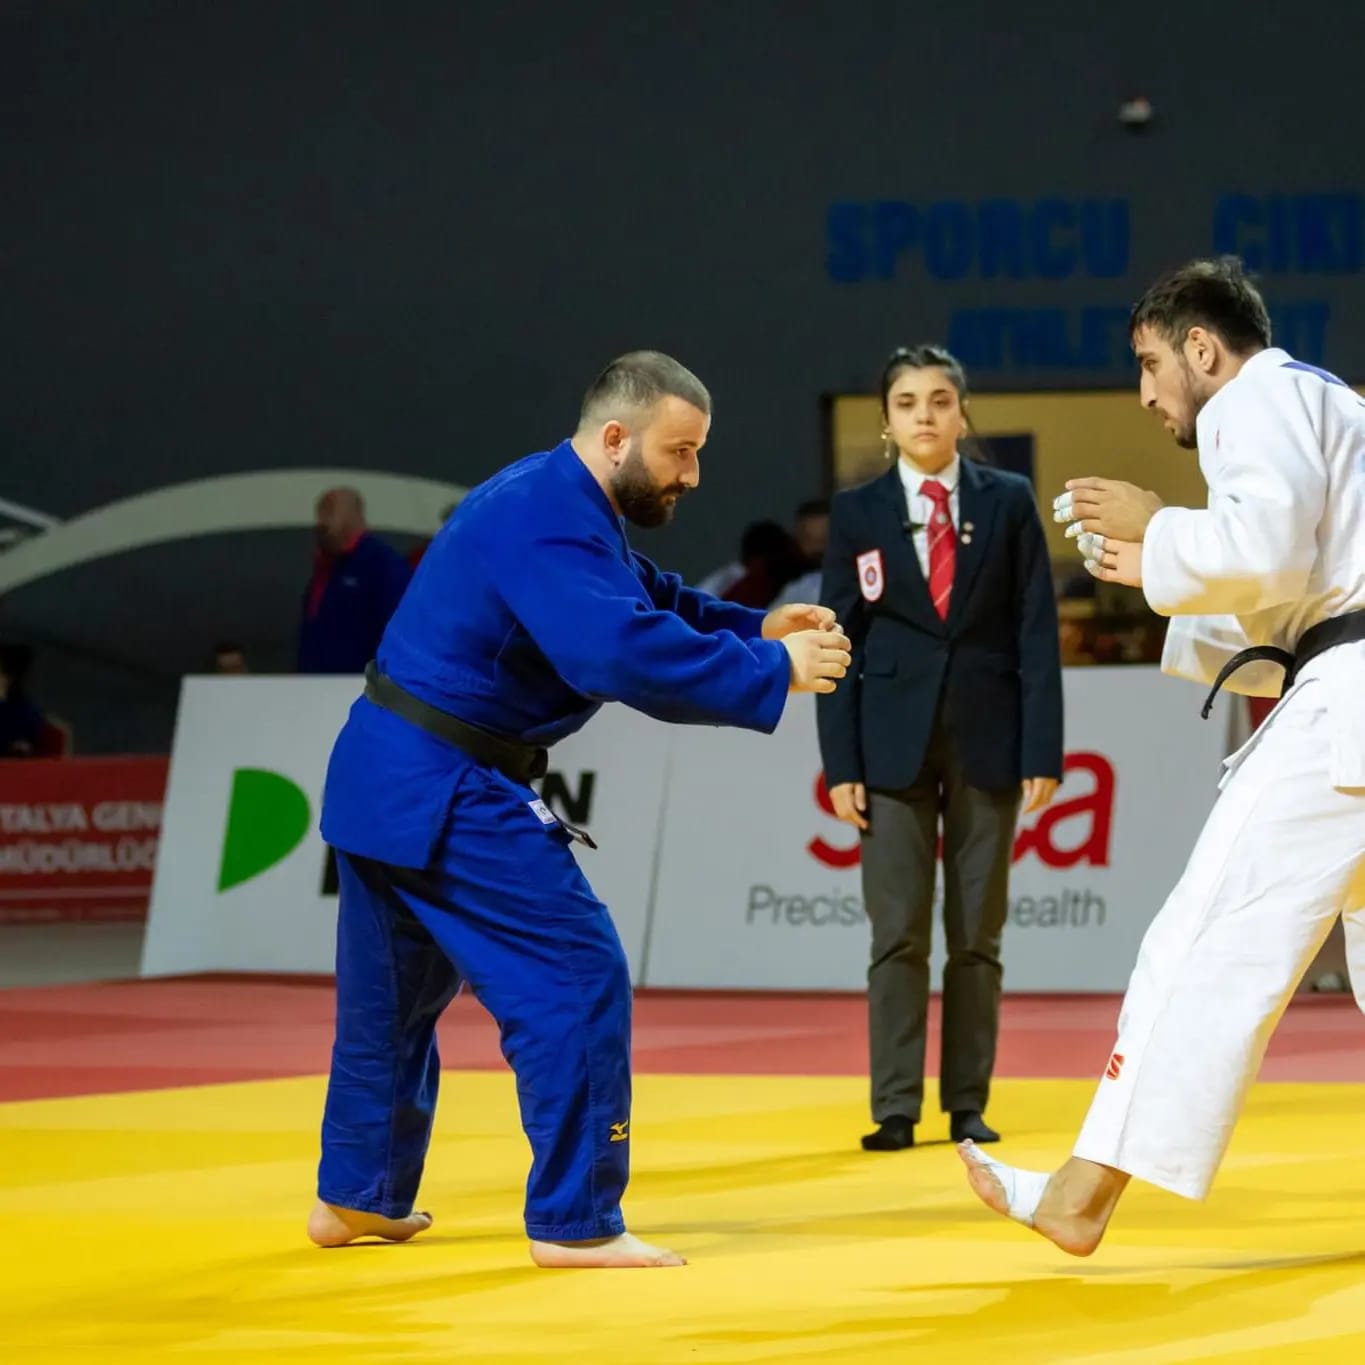 Judo Büyükler Türkiye Şampiyonası